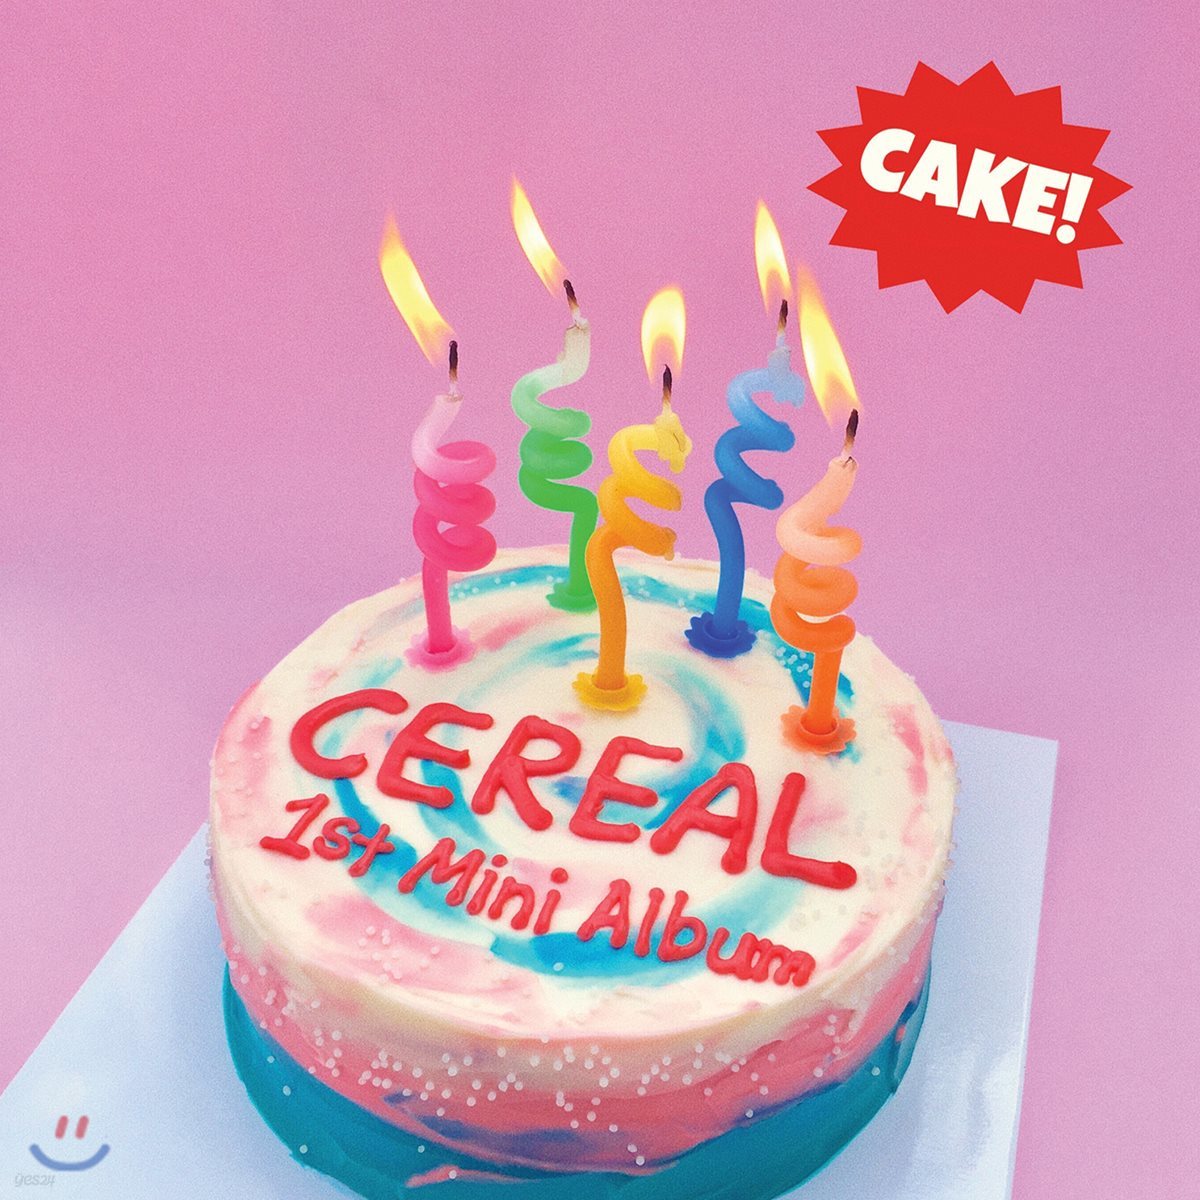 씨리얼 (Cereal) - Cake!